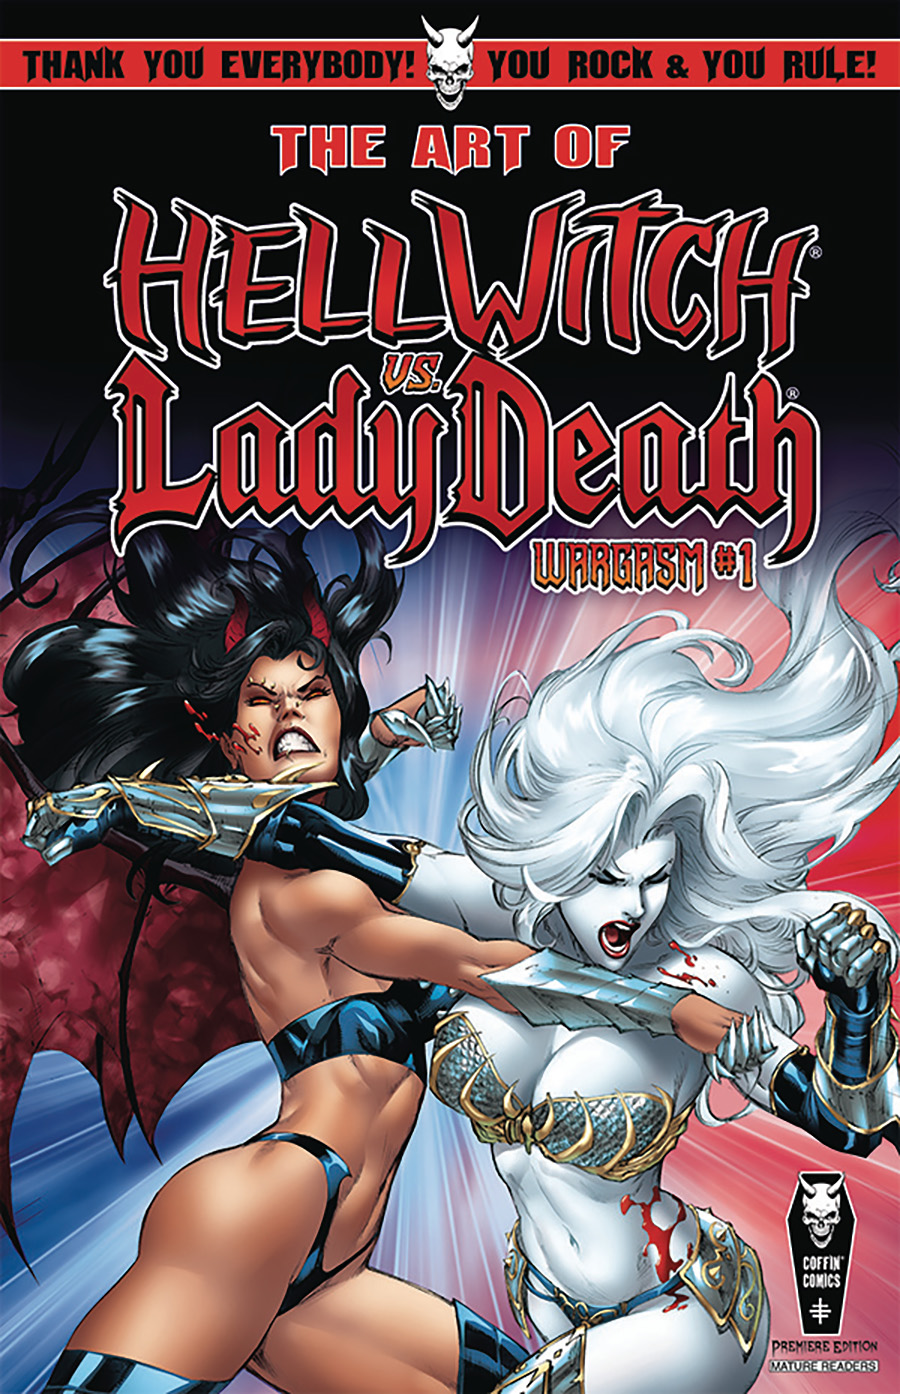 Art Of Hellwitch vs Lady Death Wargasm #1 Premiere Edition